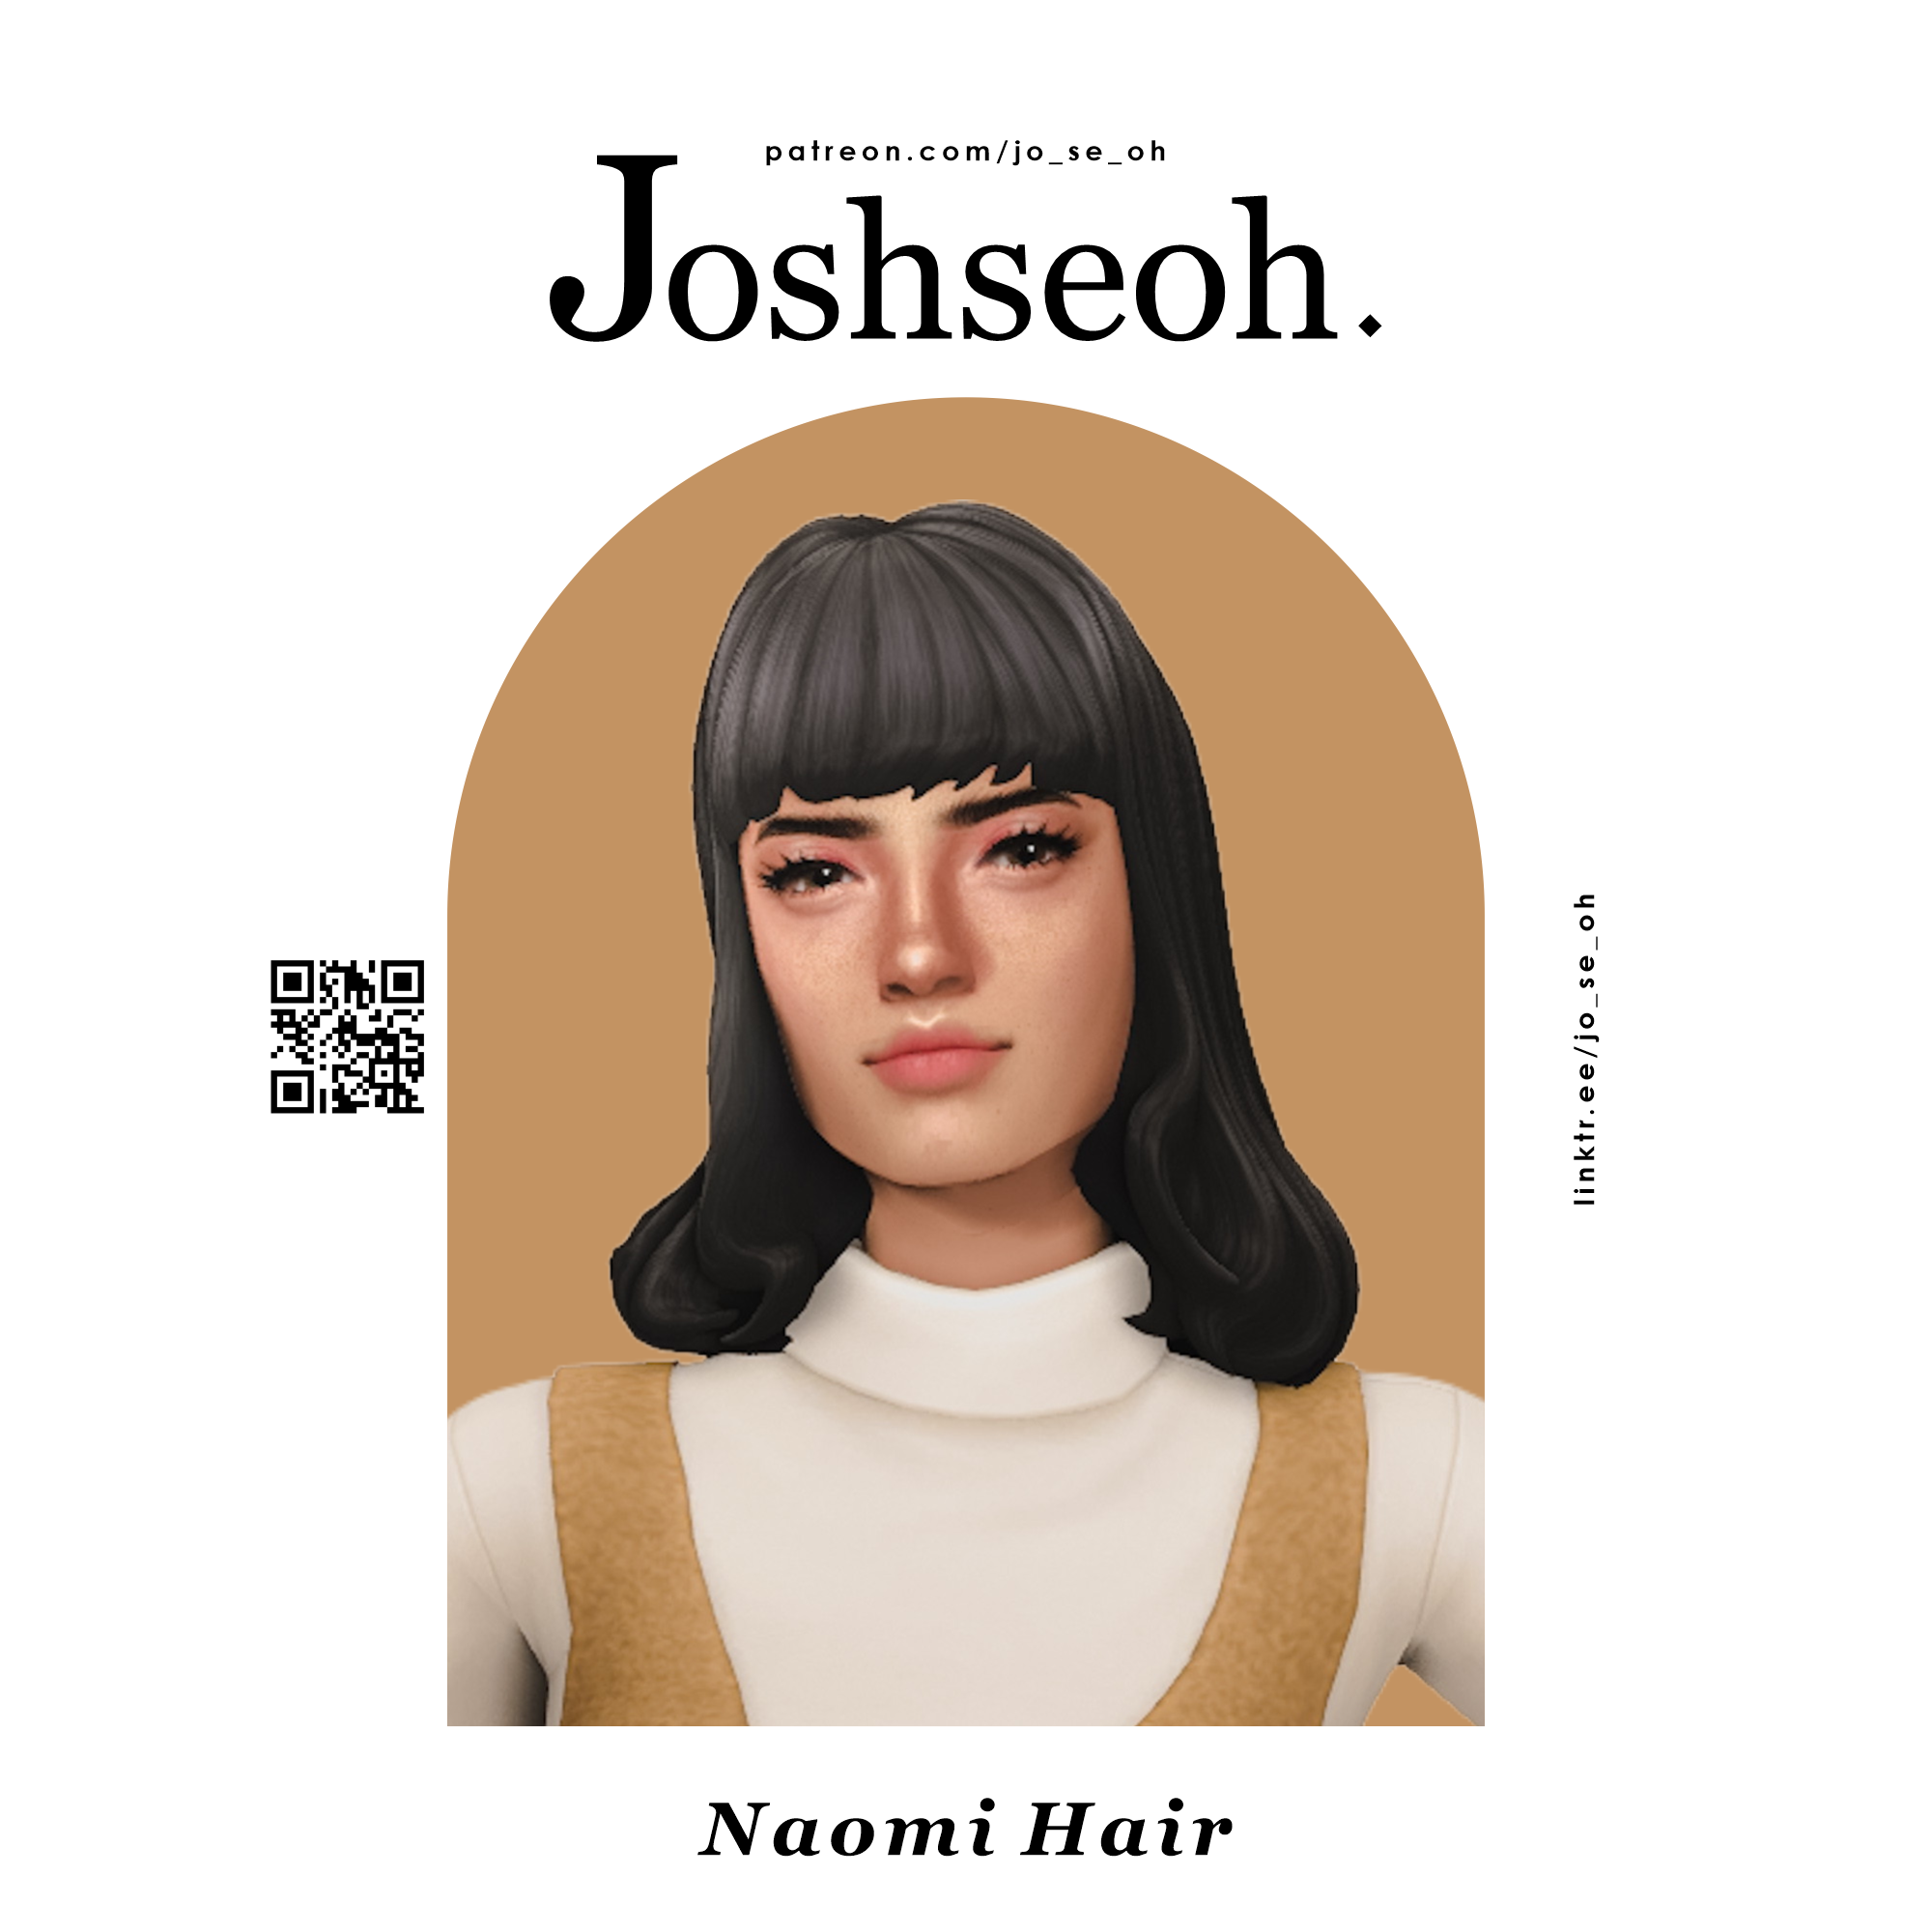 Naomi Hair - The Sims 4 Create a Sim - CurseForge